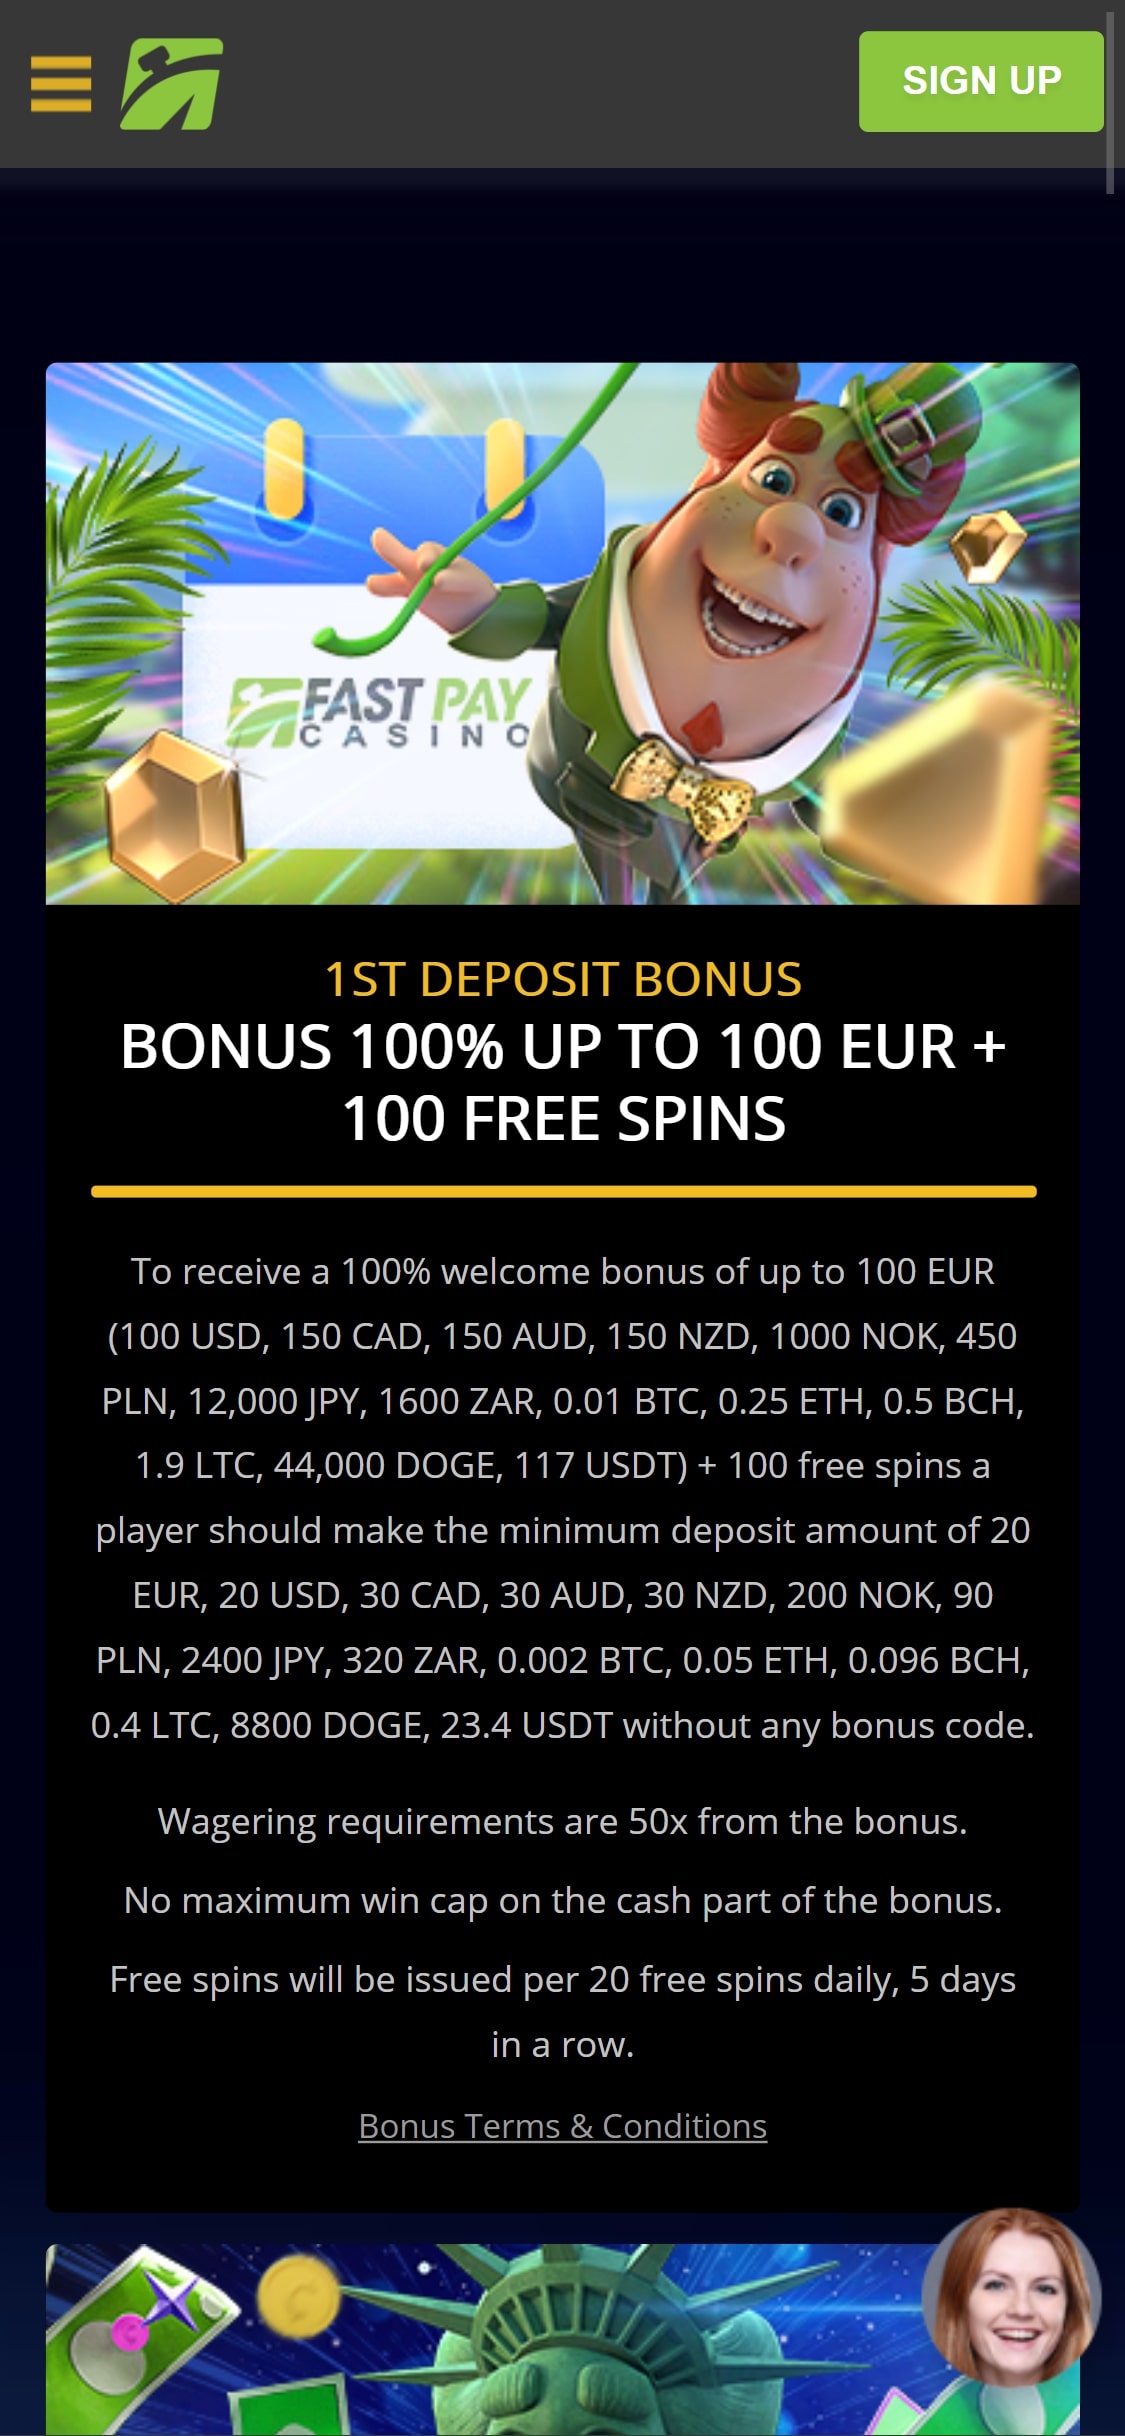 Fastpay Casino Mobile No Deposit Bonus Review